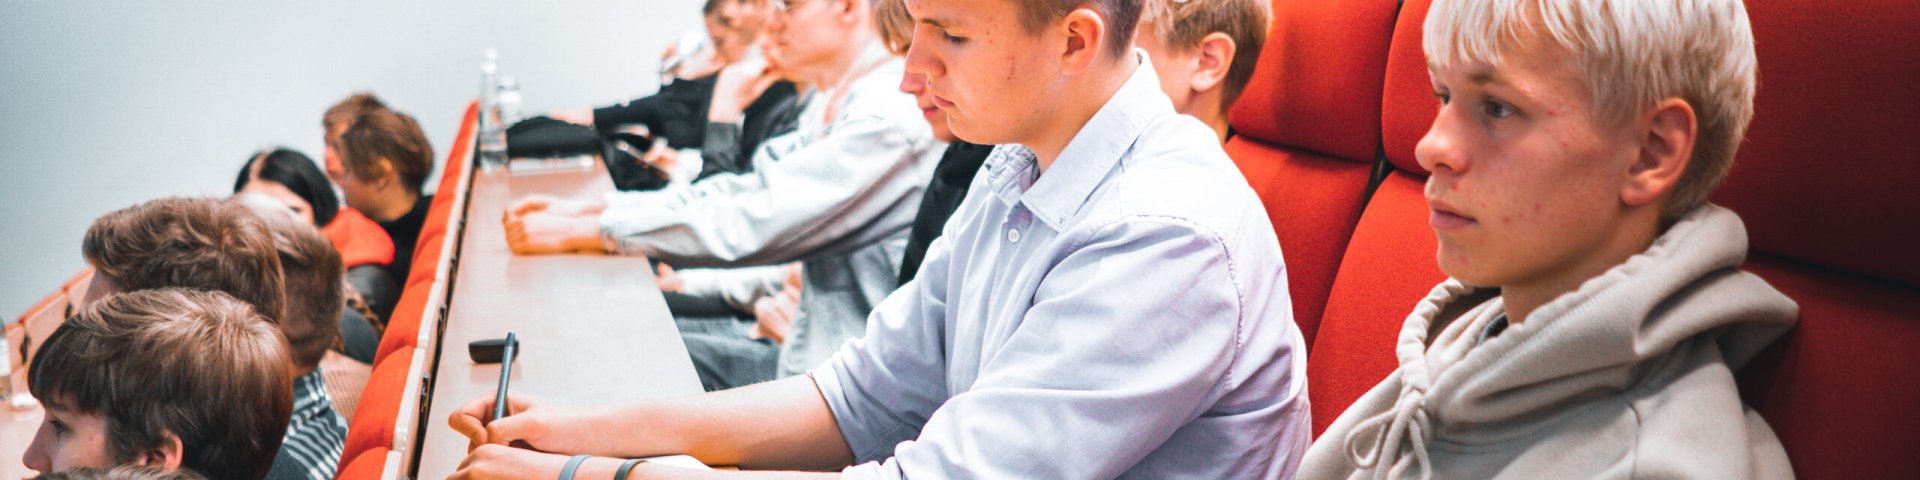 Pärnumaa gümnaasiumite noored peavad oluliseks kolledžist valikainete saamist